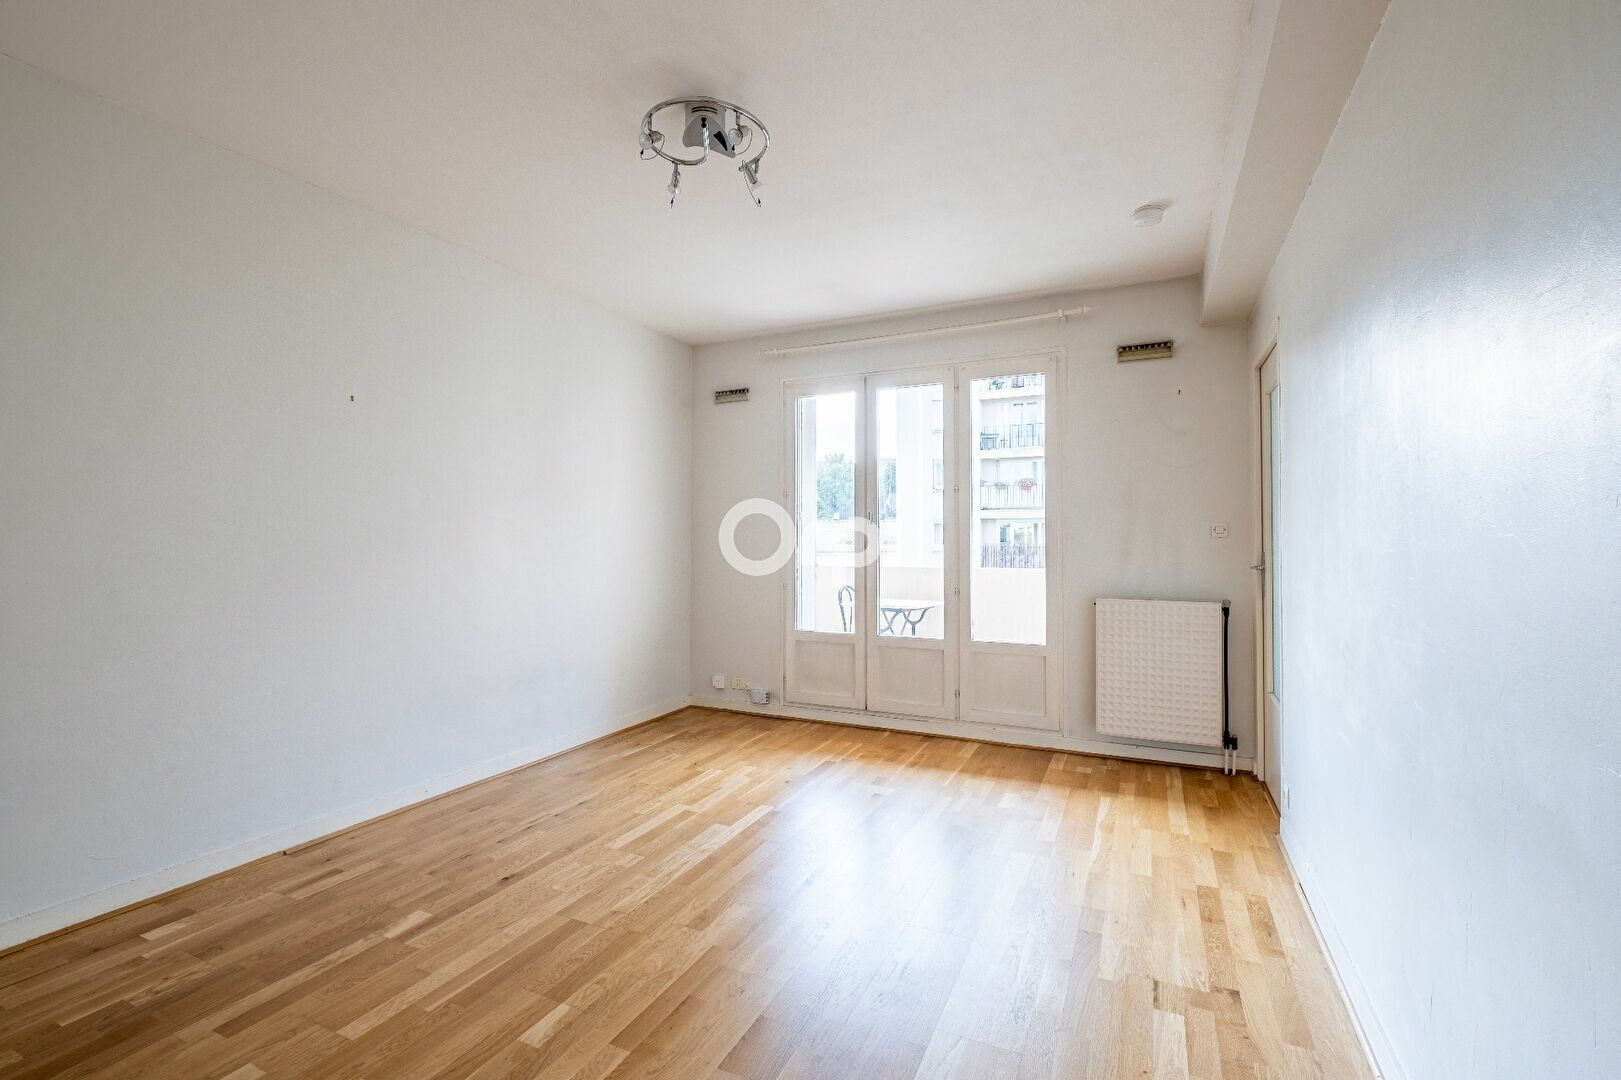 Appartement à louer 1 30m2 à Limoges vignette-2